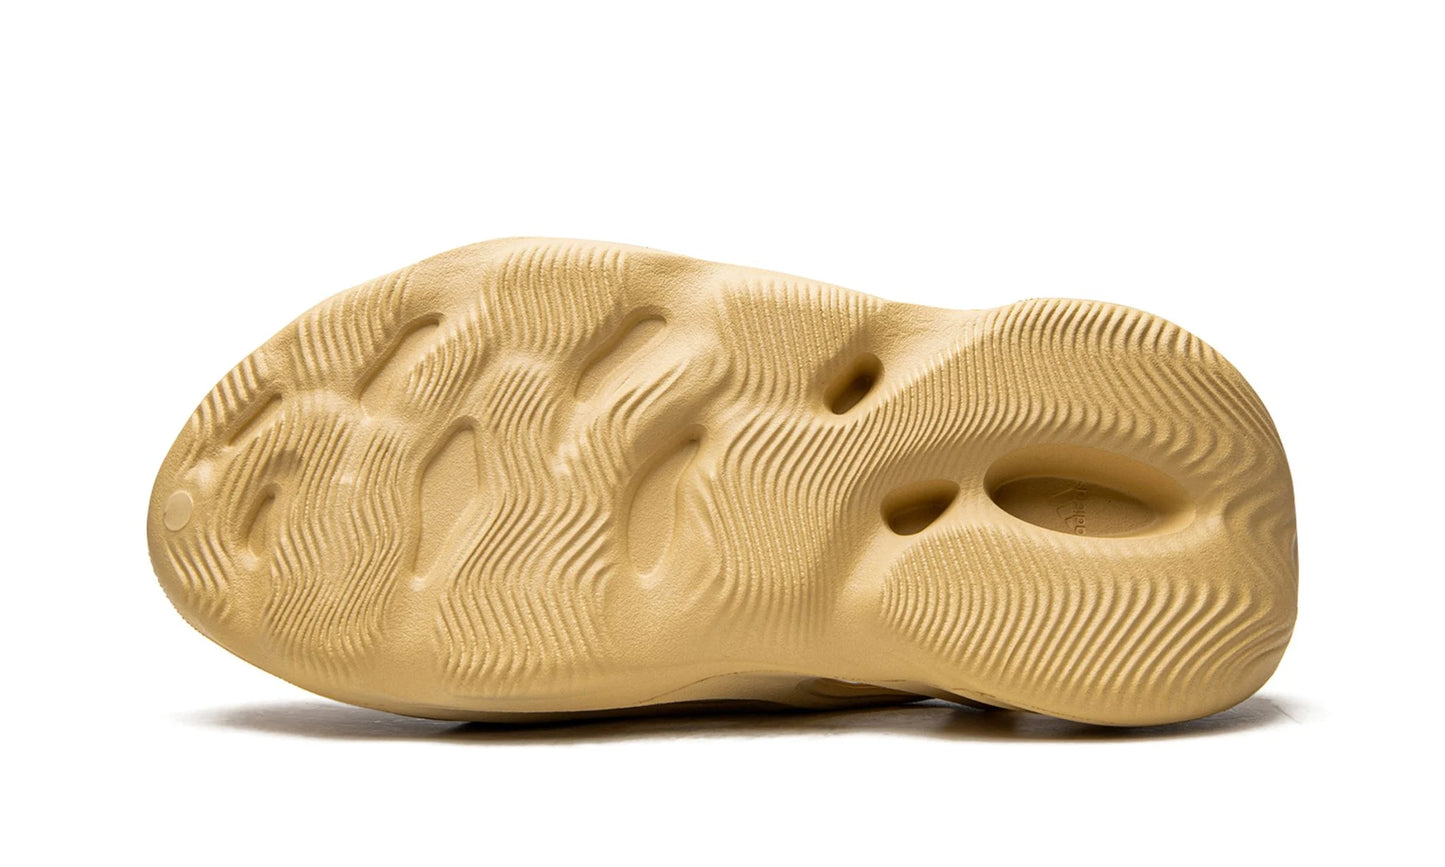 adidas Yeezy Foam Runner 'Desert Sand'